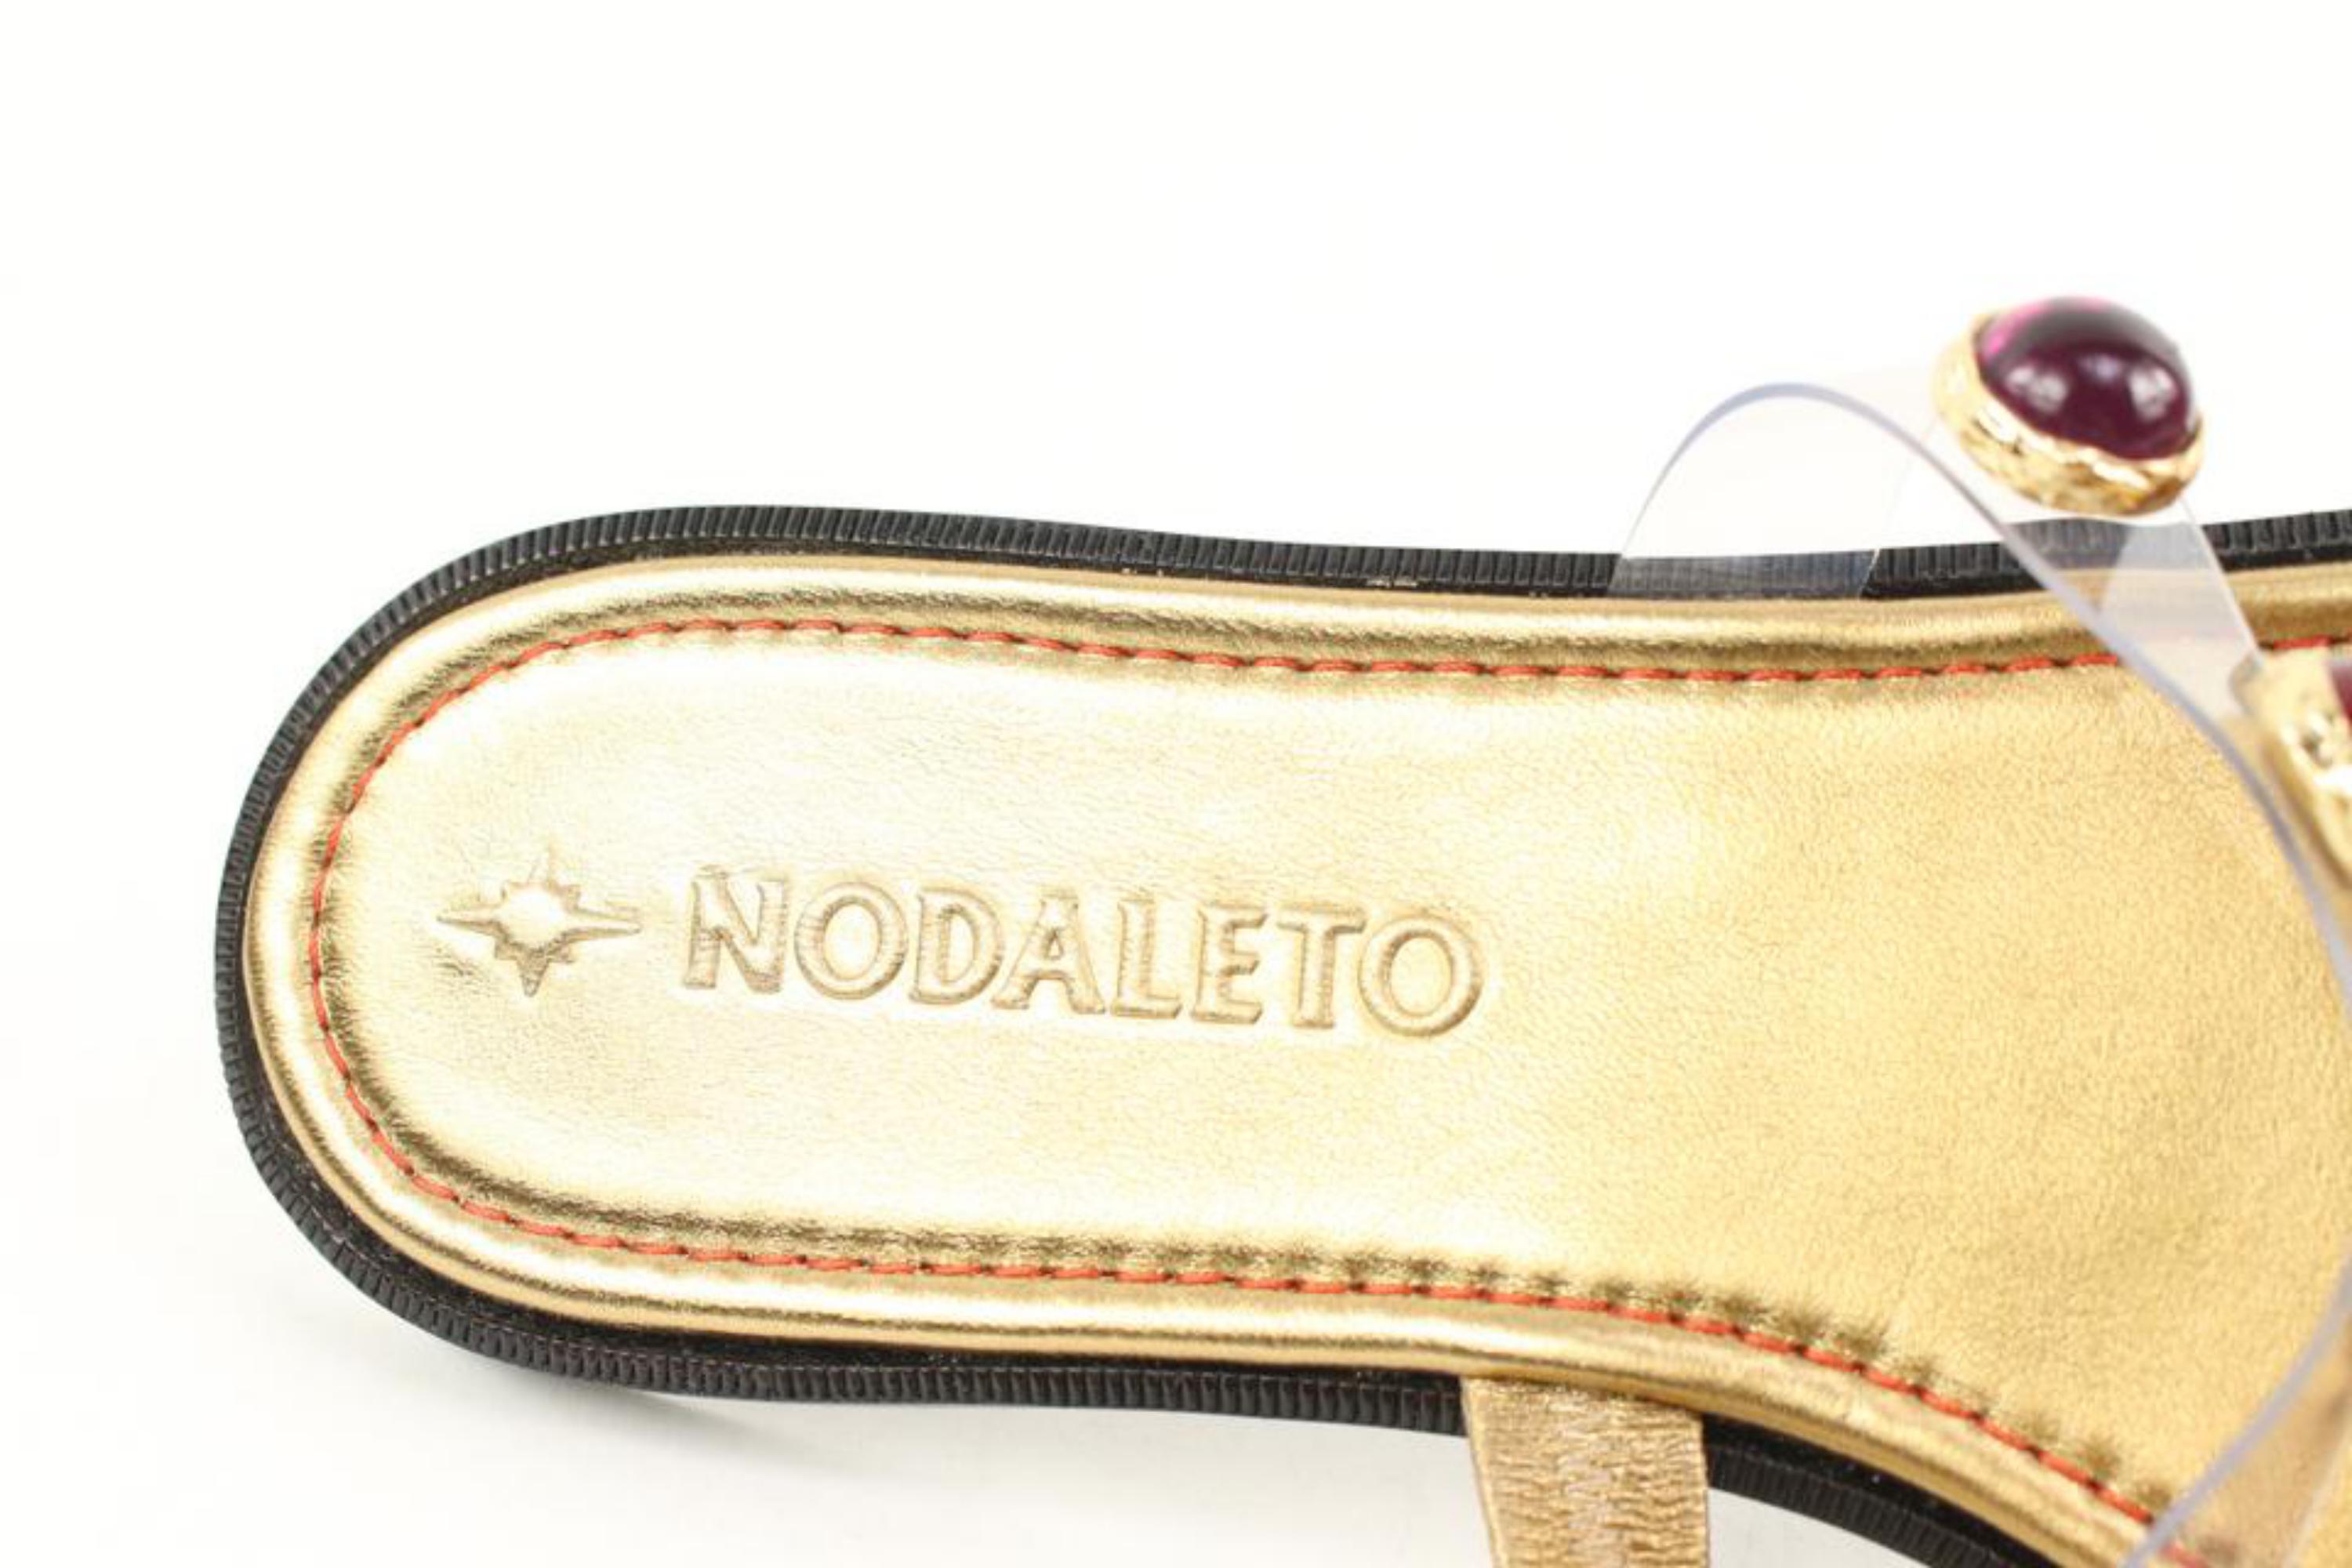 Nodaleto Sz 38 $735 Bulla Salem Flat Jeweled Gold Sandals 39n31s 40n321s 6